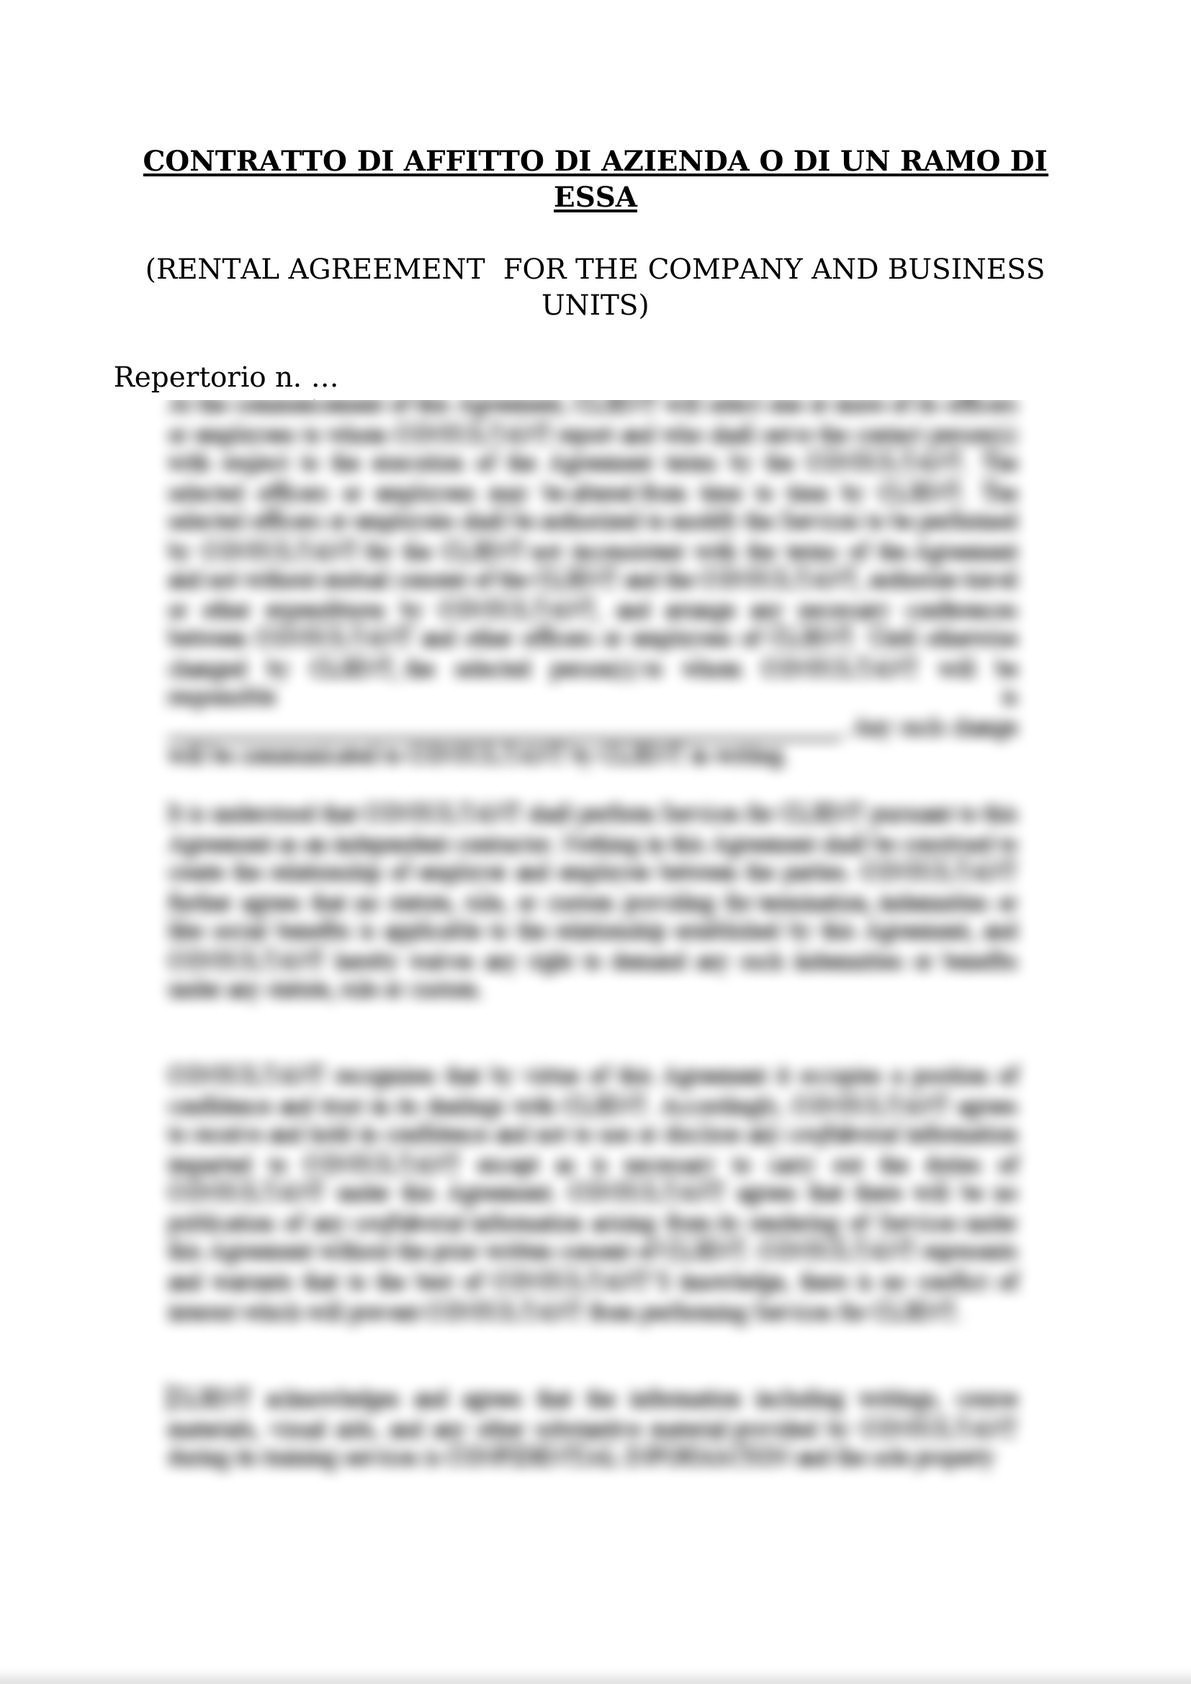 RENTAL AGREEMENT  FOR THE COMPANY AND BUSINESS UNITS / CONTRATTO DI AFFITTO DI AZIENDA O DI UN RAMO DI ESSA-0